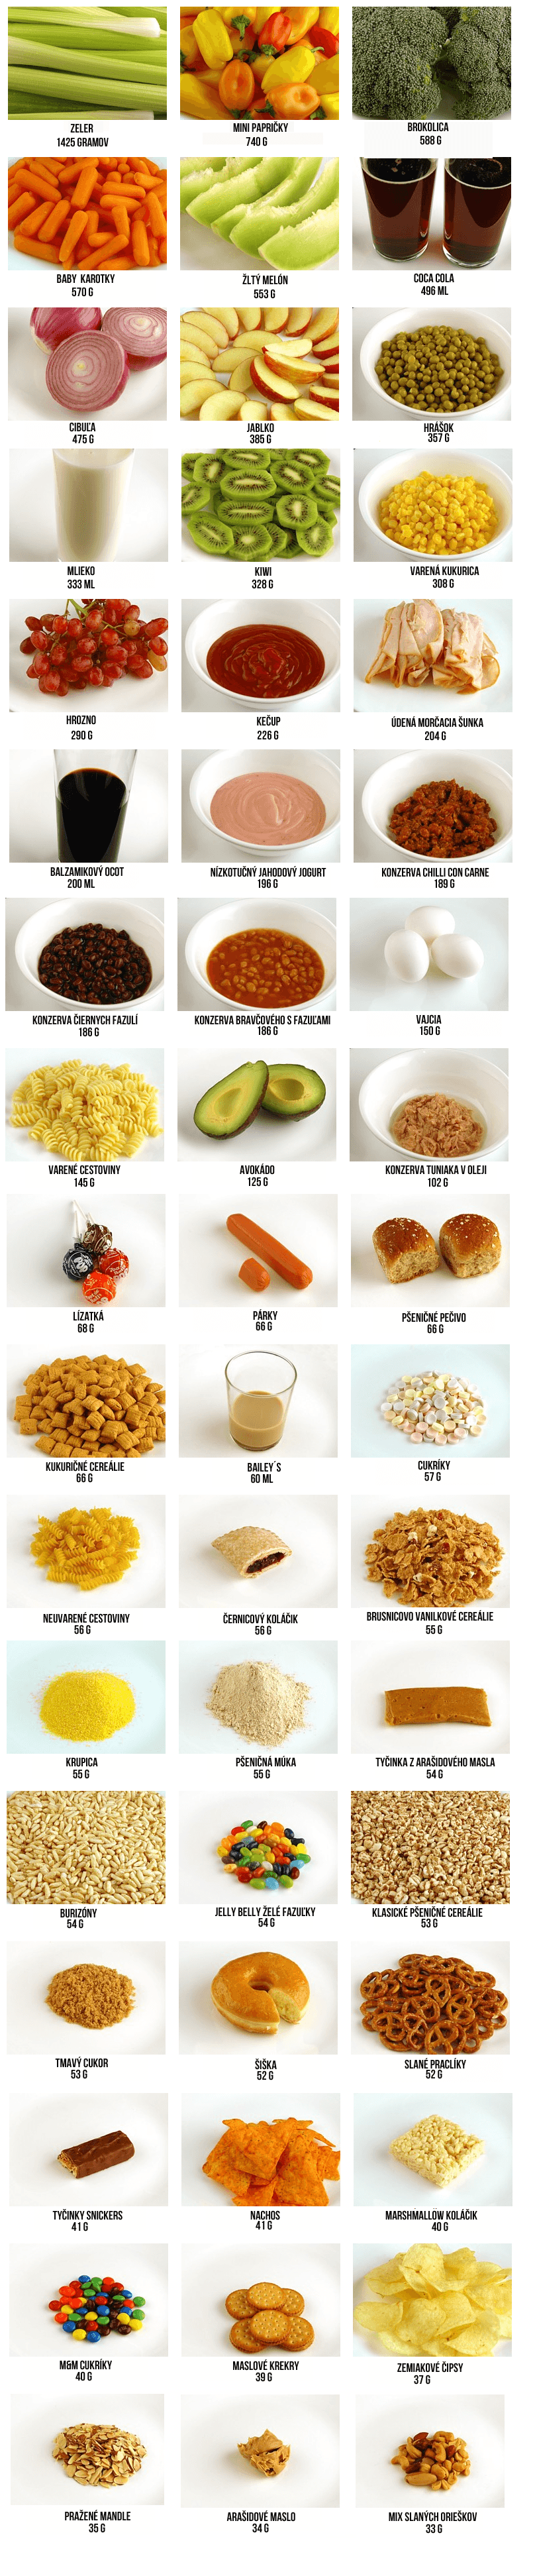 hogyan néz ki 200 kalória különböző élelmiszerekben